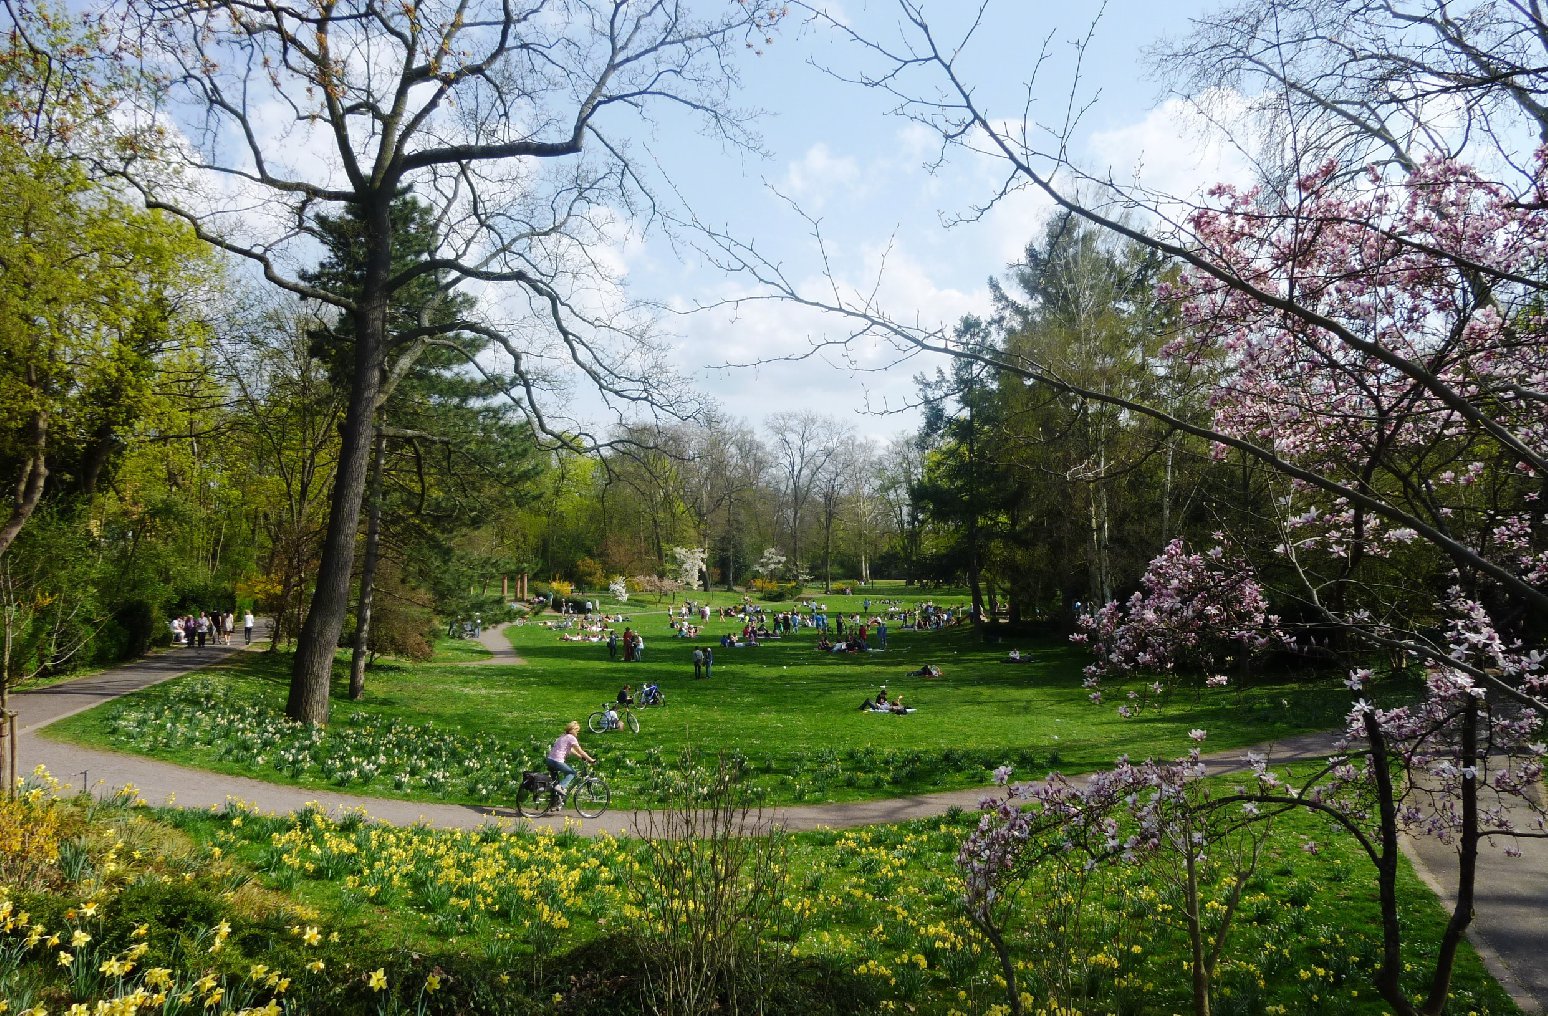 Grünflächen wie der Landauer Goethepark sind wichtig für das Klima einer Stadt – vor allem im Sommer. Ein Klimaanpassungskonzept, wie es auch die Stadt Landau erstellen lassen will, soll die Auswirkungen des Klimawandels abmildern. Dies kann etwa durch das Pflanzen von Bäumen oder das Verknüpfen einzelner Grünflächen geschehen. Foto: ld